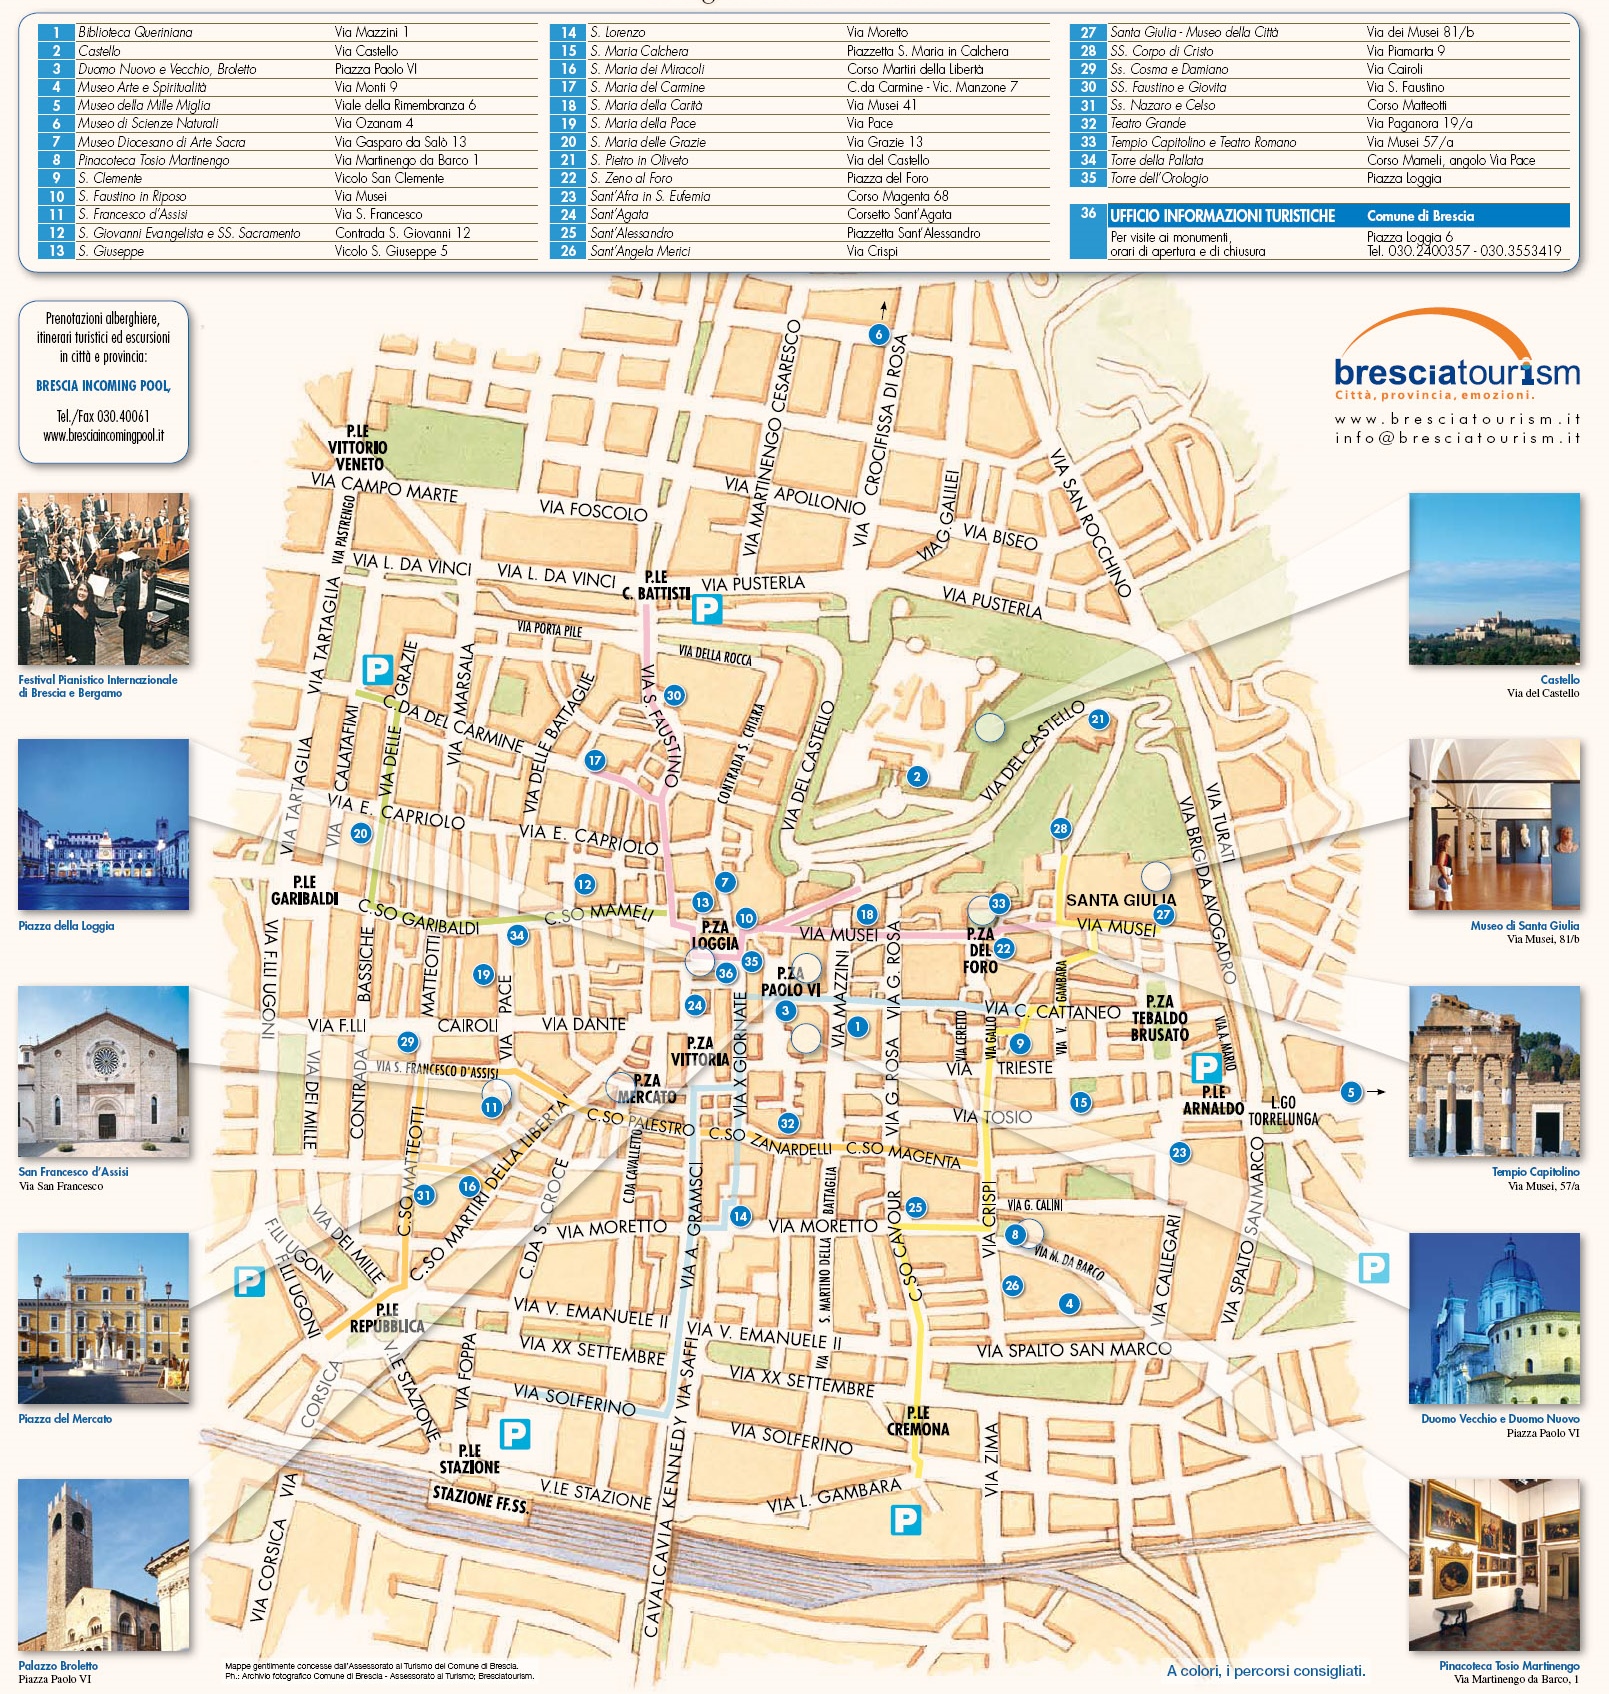 Brescia tourist attractions map